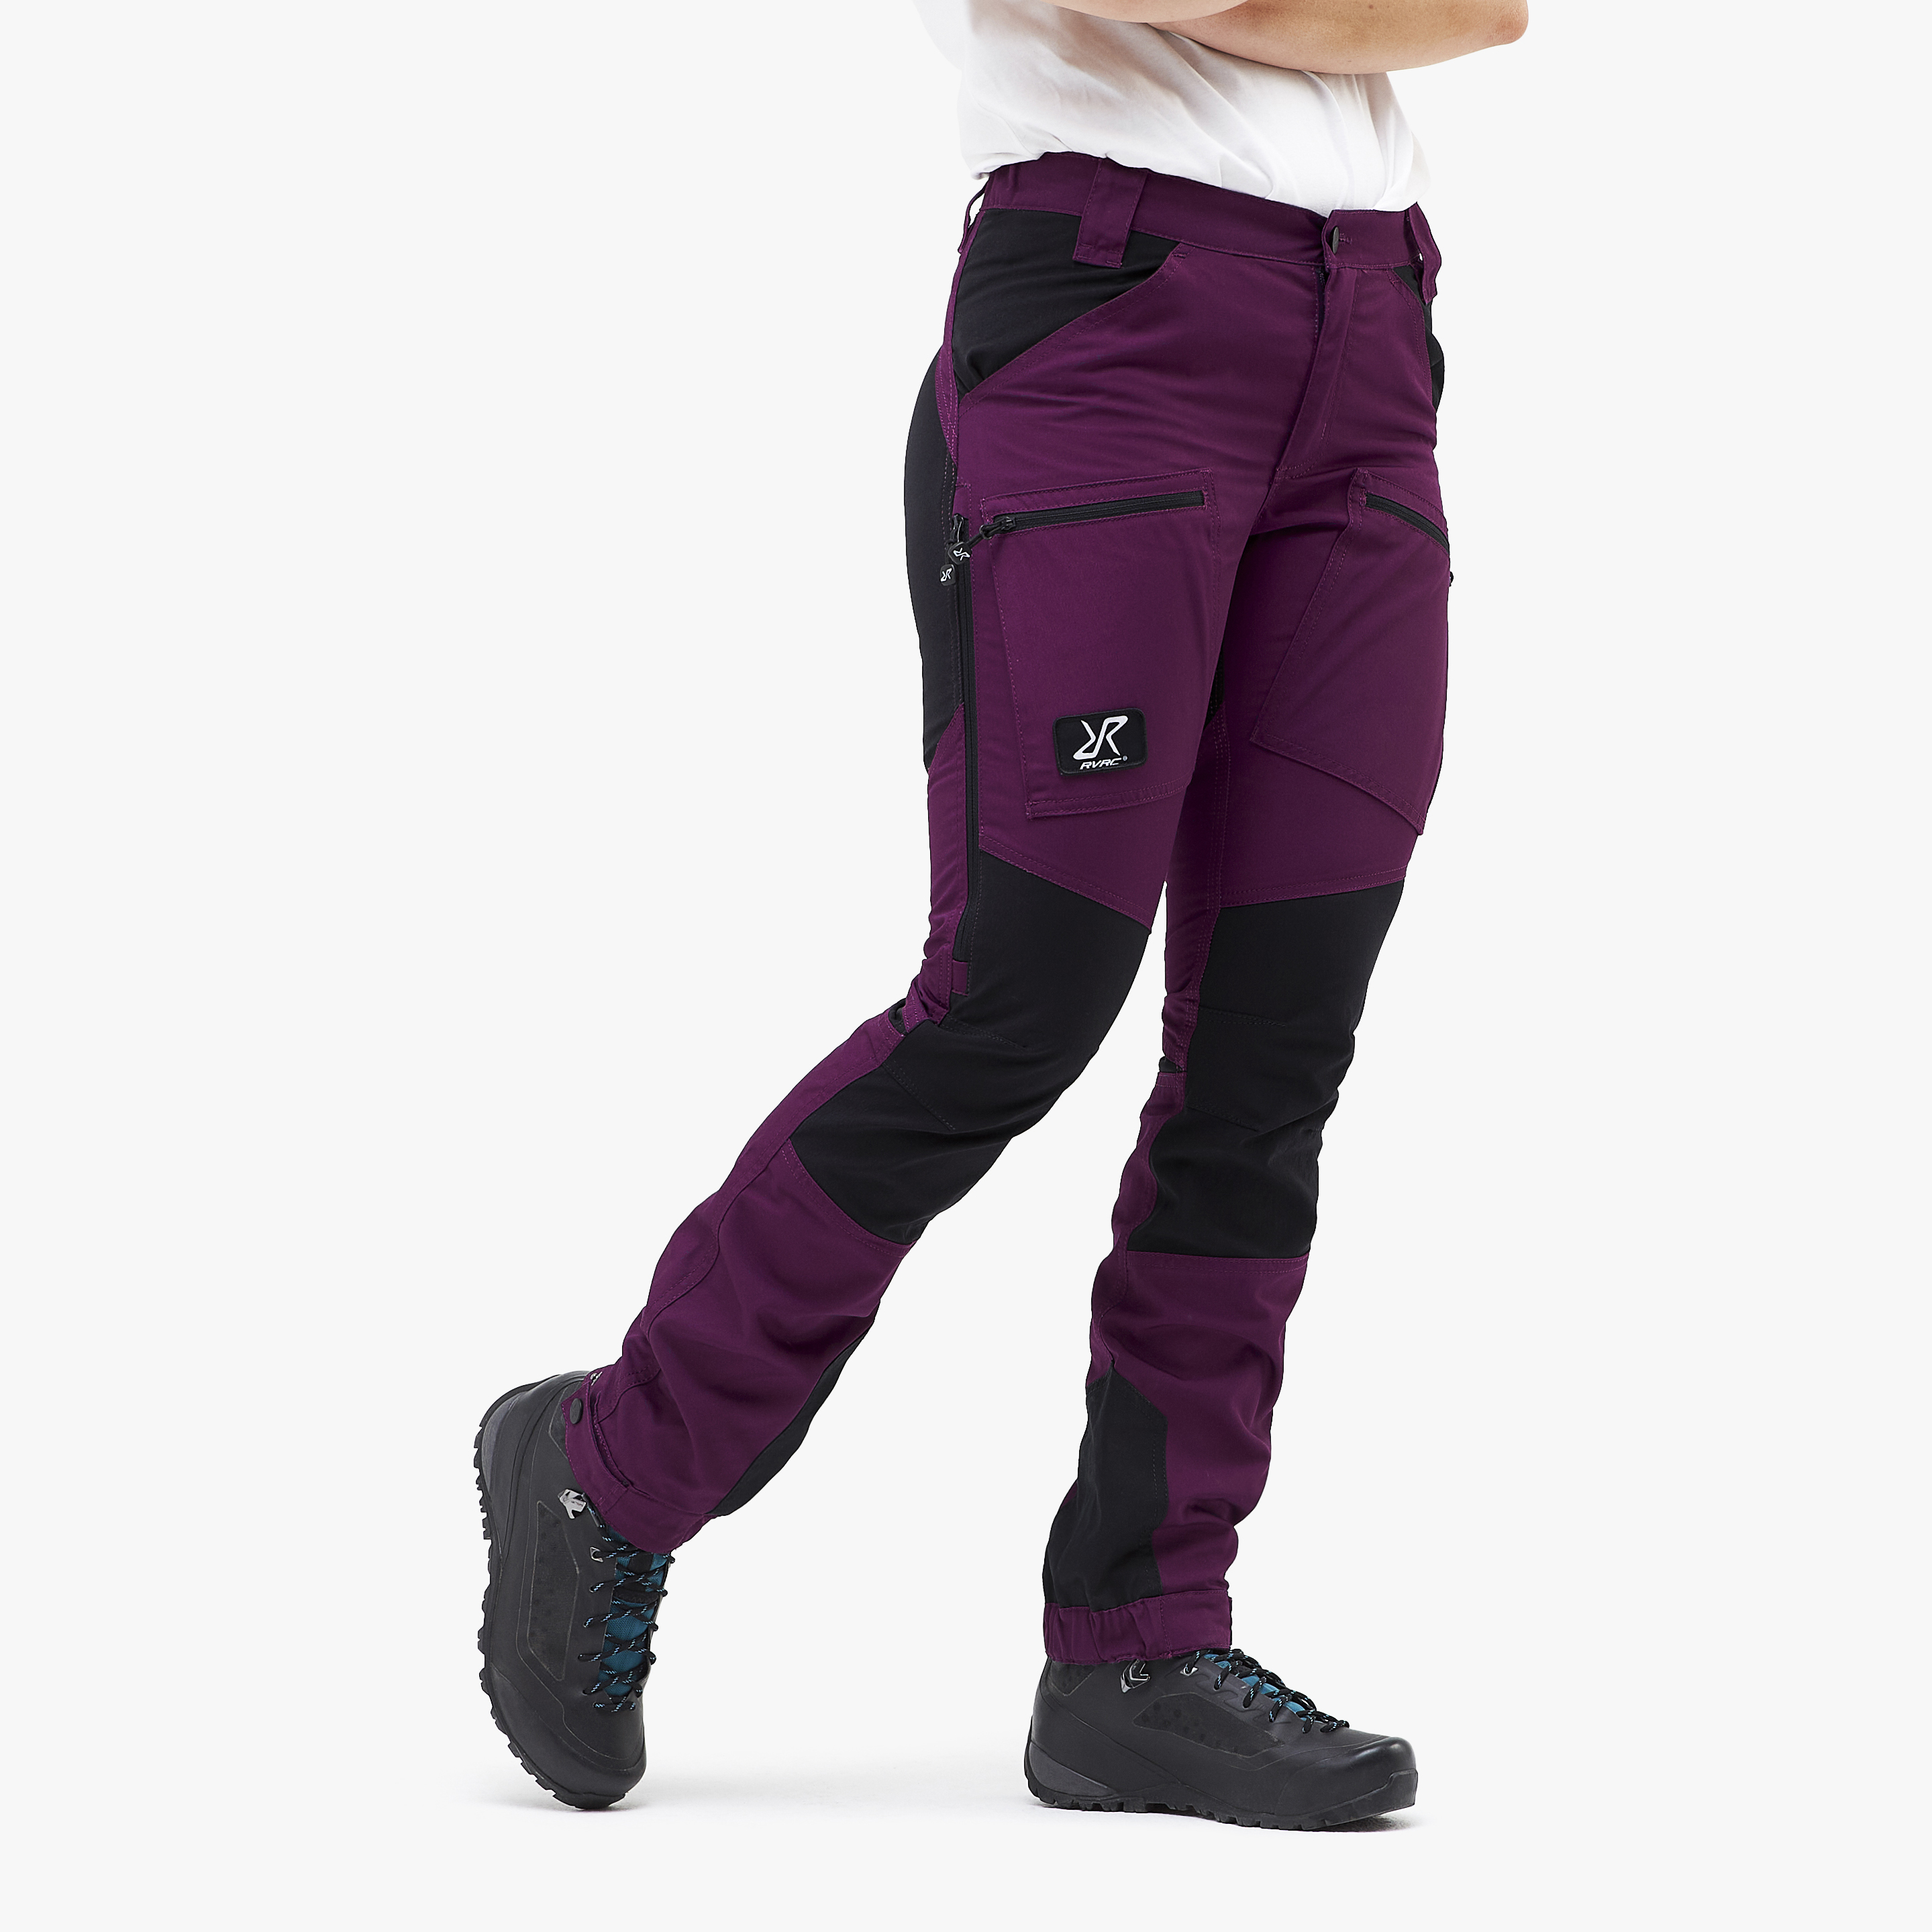 Nordwand Pro Short spodnie trekkingowe damskie purpurowy